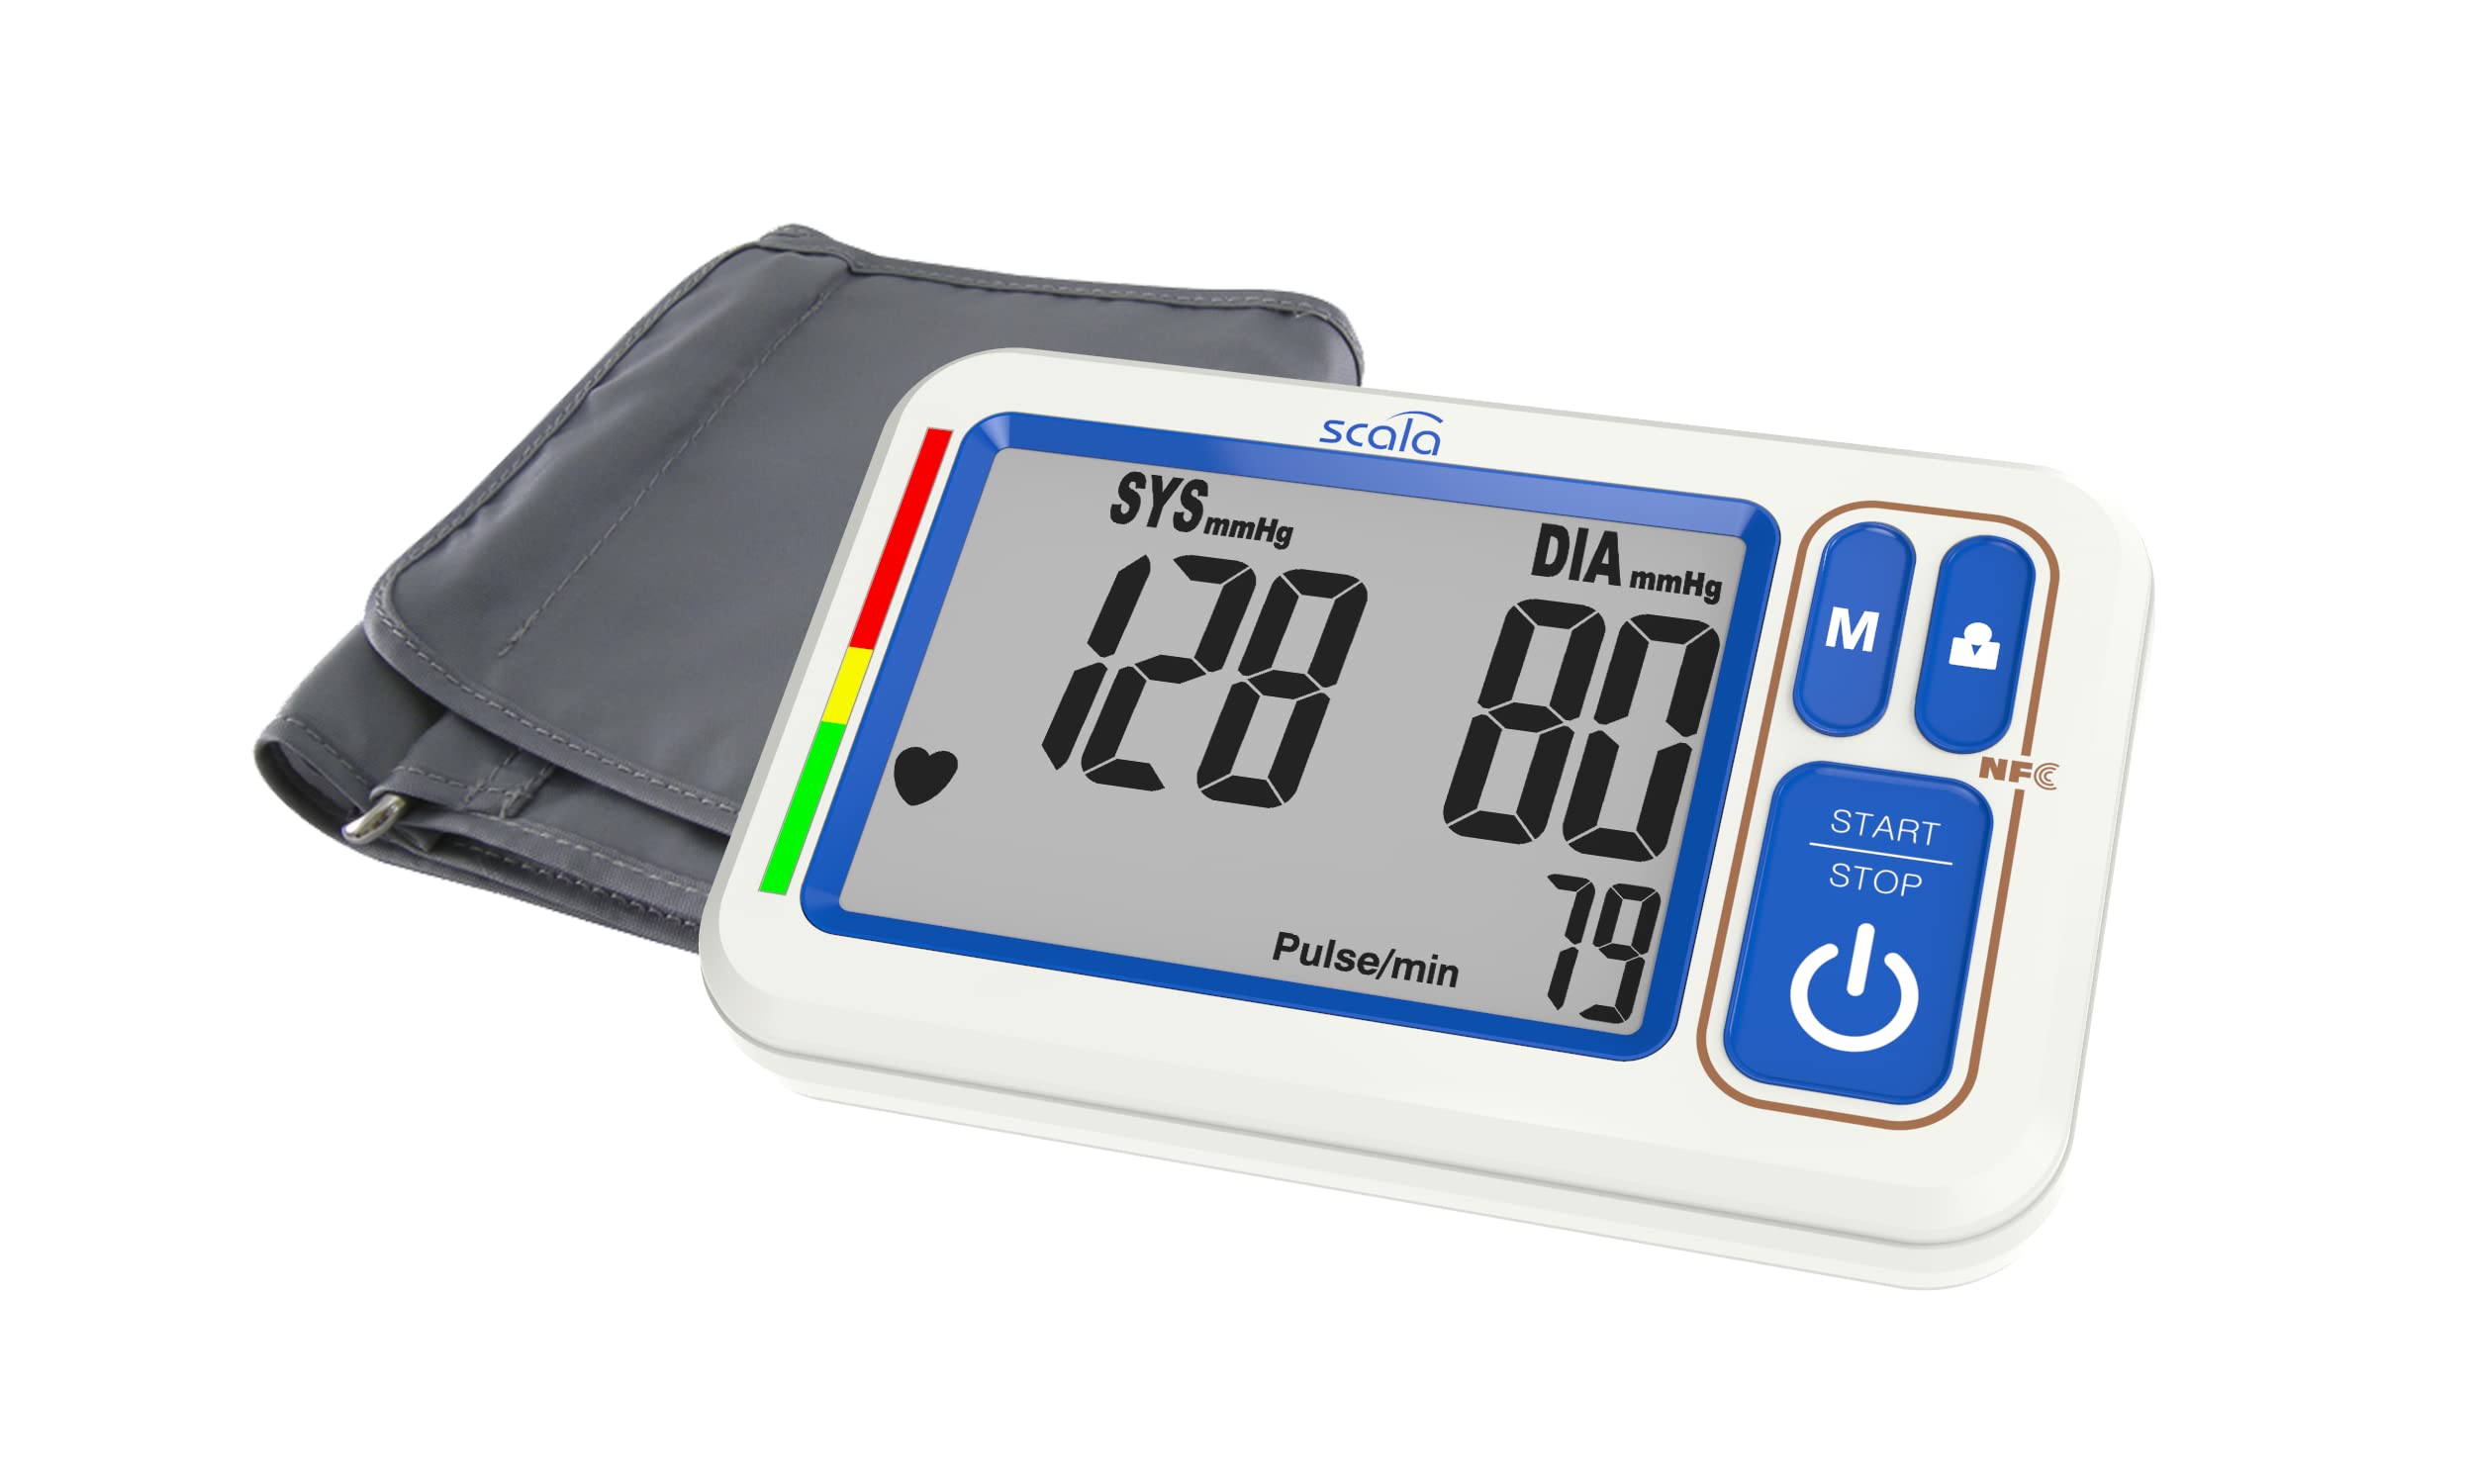 scala SC 6750 NFC digitales Oberarmblutdruckmessgerät mit Datenübertragung und Datenmanagement mit einer APP